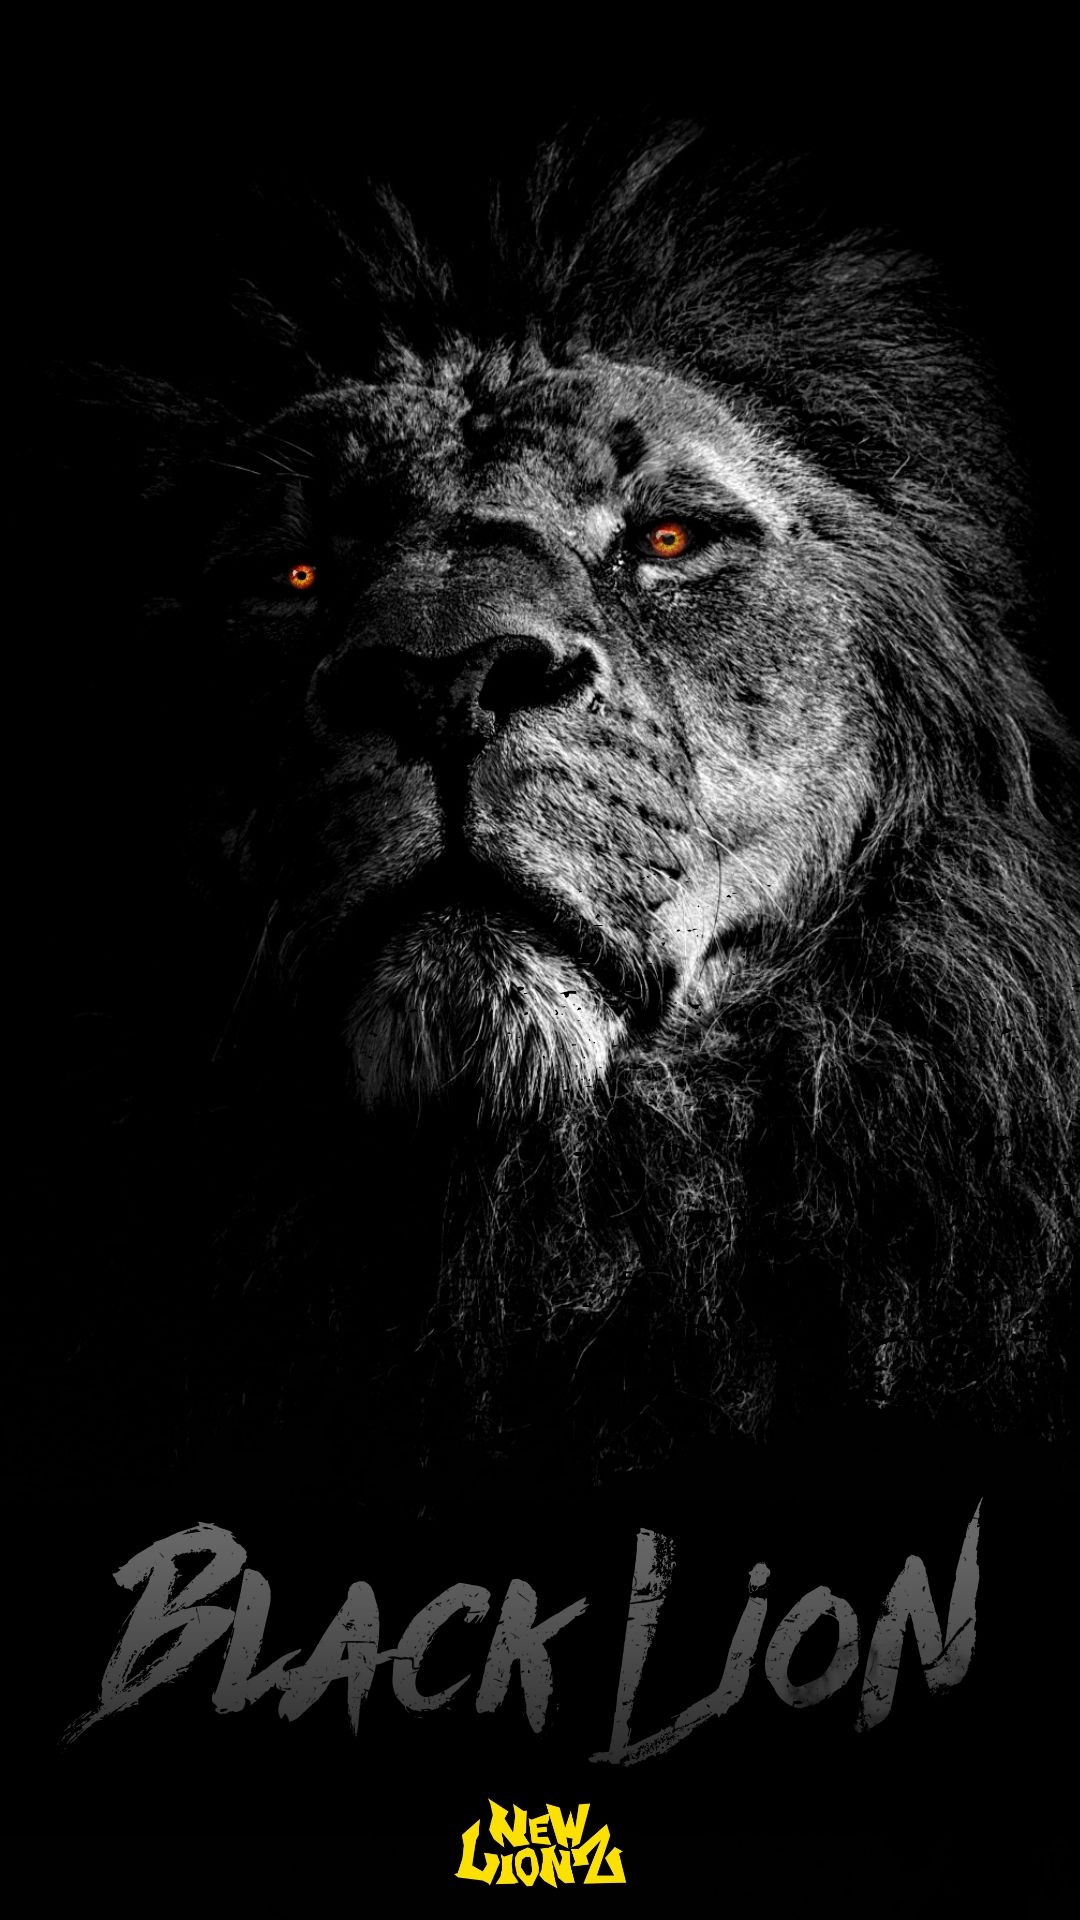 Black Lion (NewLionz) IPhone Android Wallpaper. Lion Picture, Lion Photography, Lion Live Wallpaper